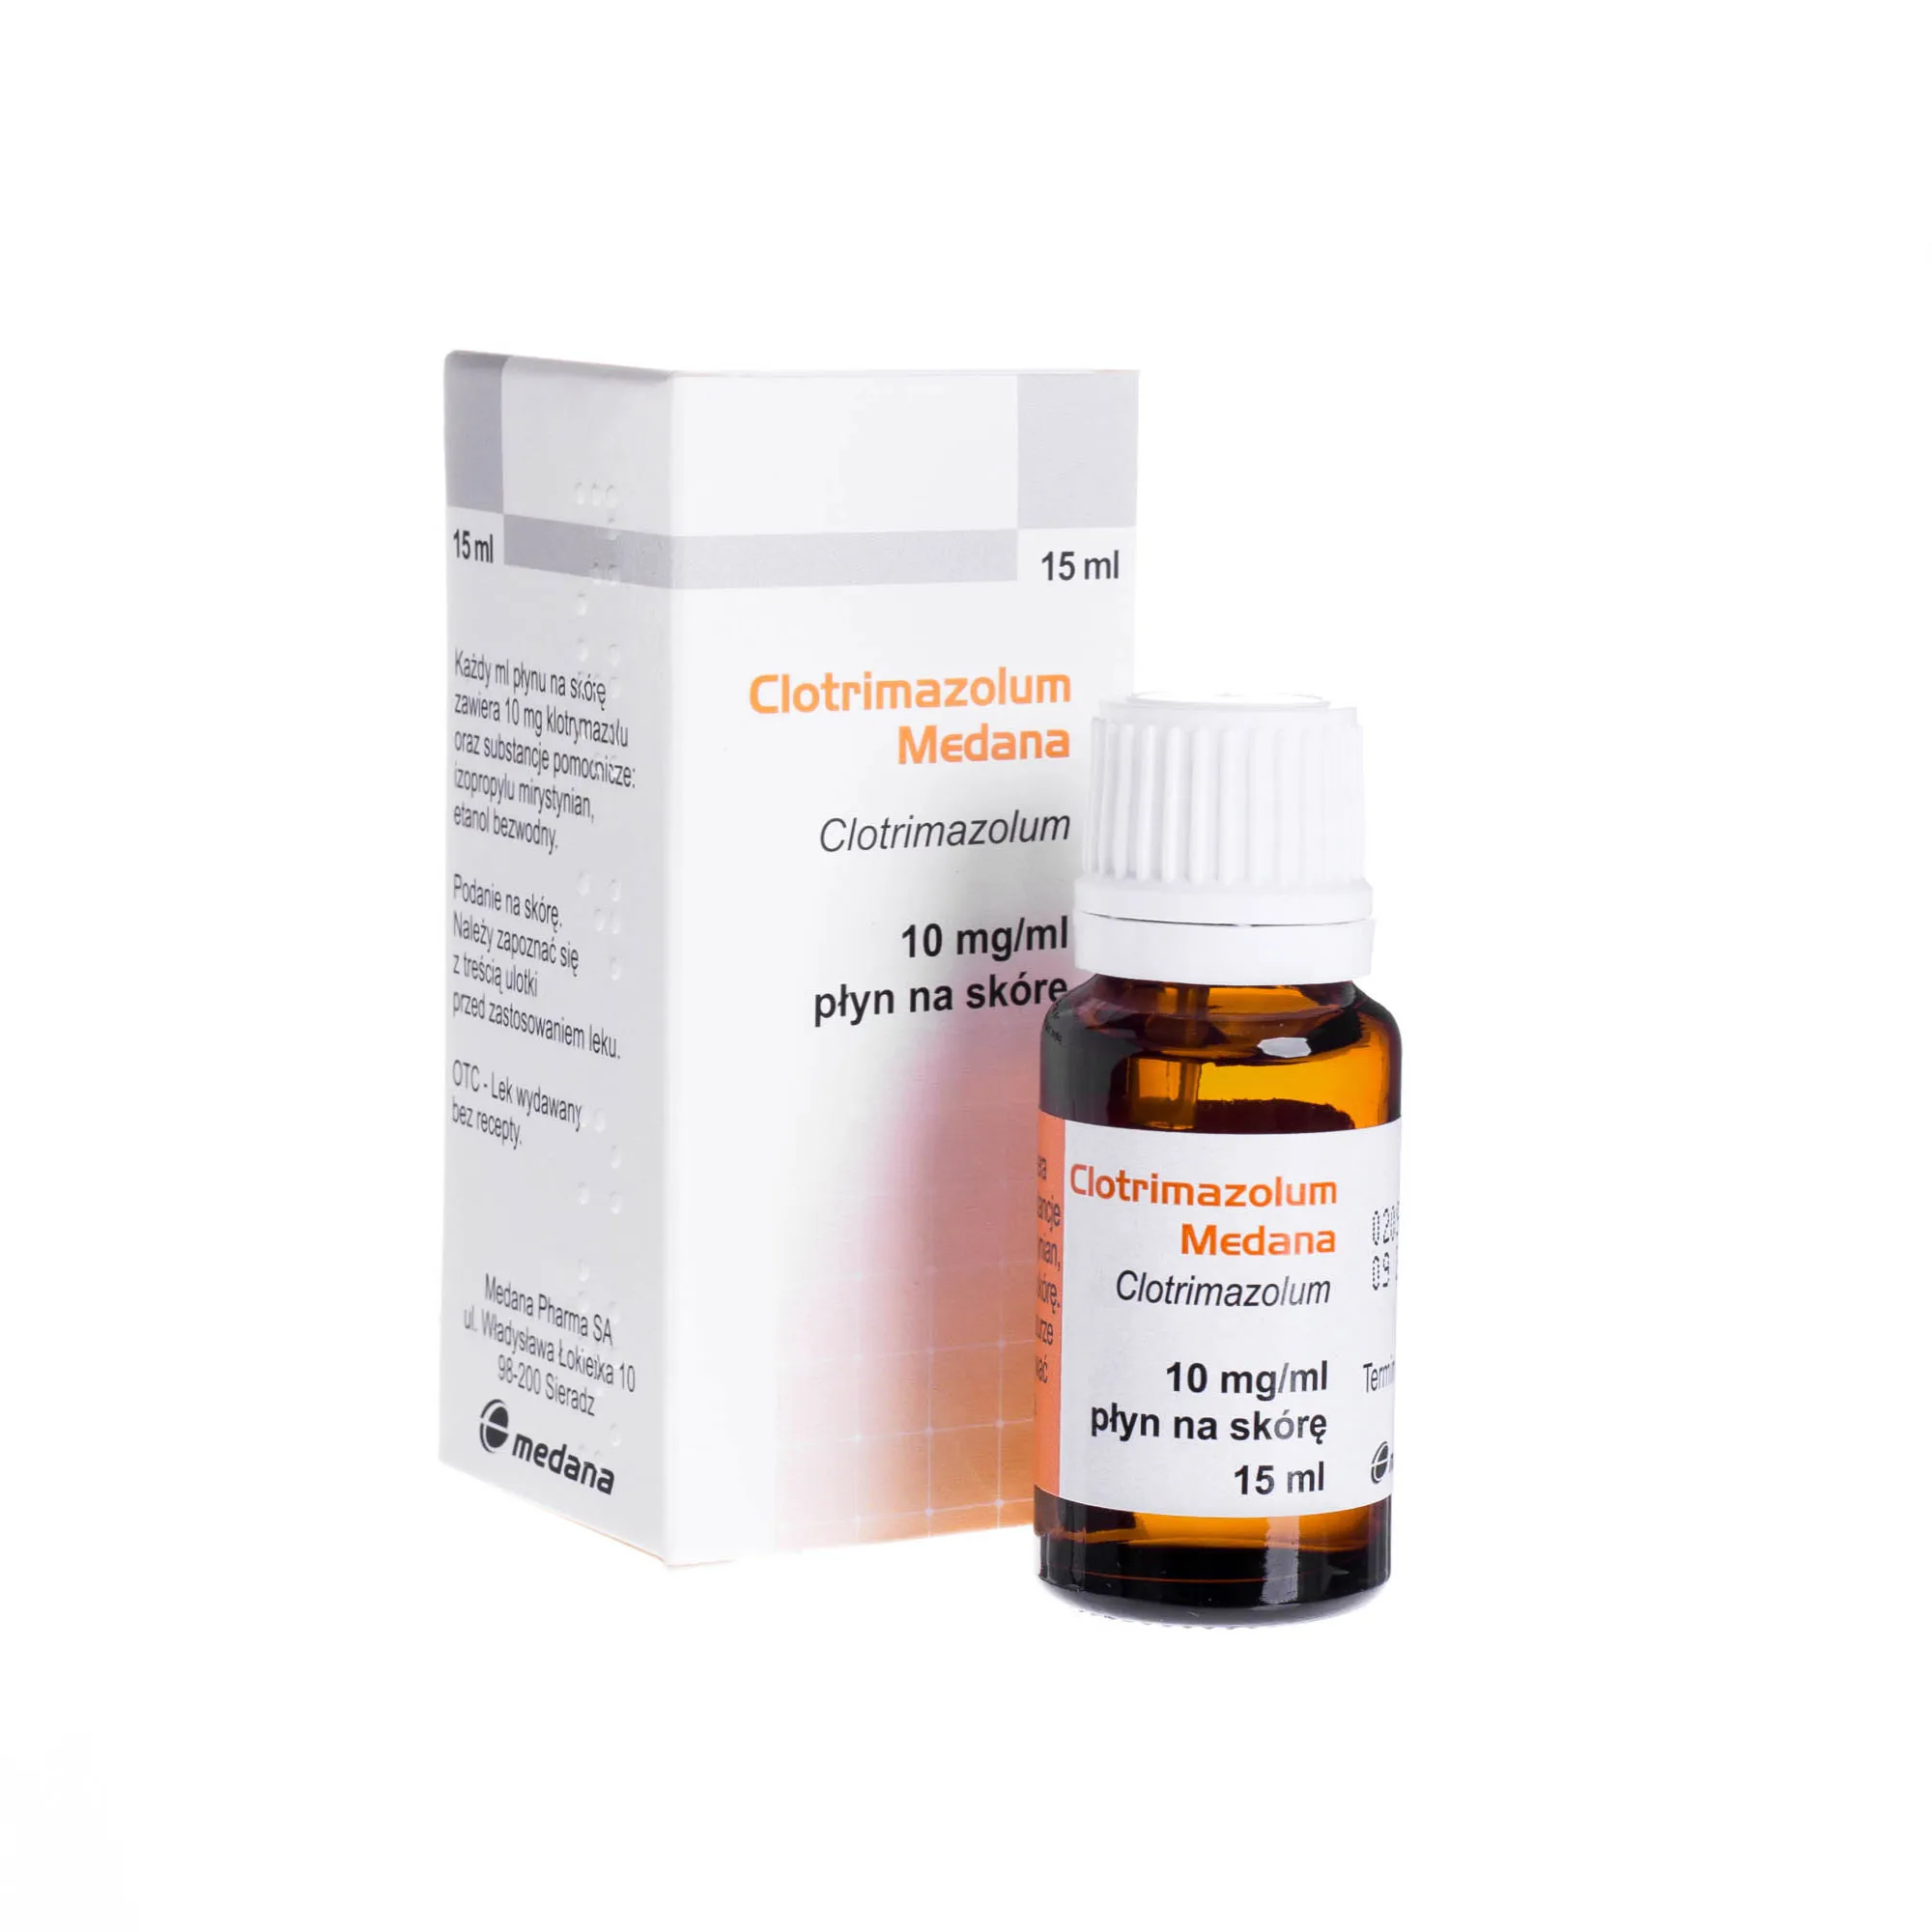 Clotrimazolum Medana 10 mg/ml - płyn na skórę o szerokim zakresie działania przeciwgrzybiczego, 15 ml